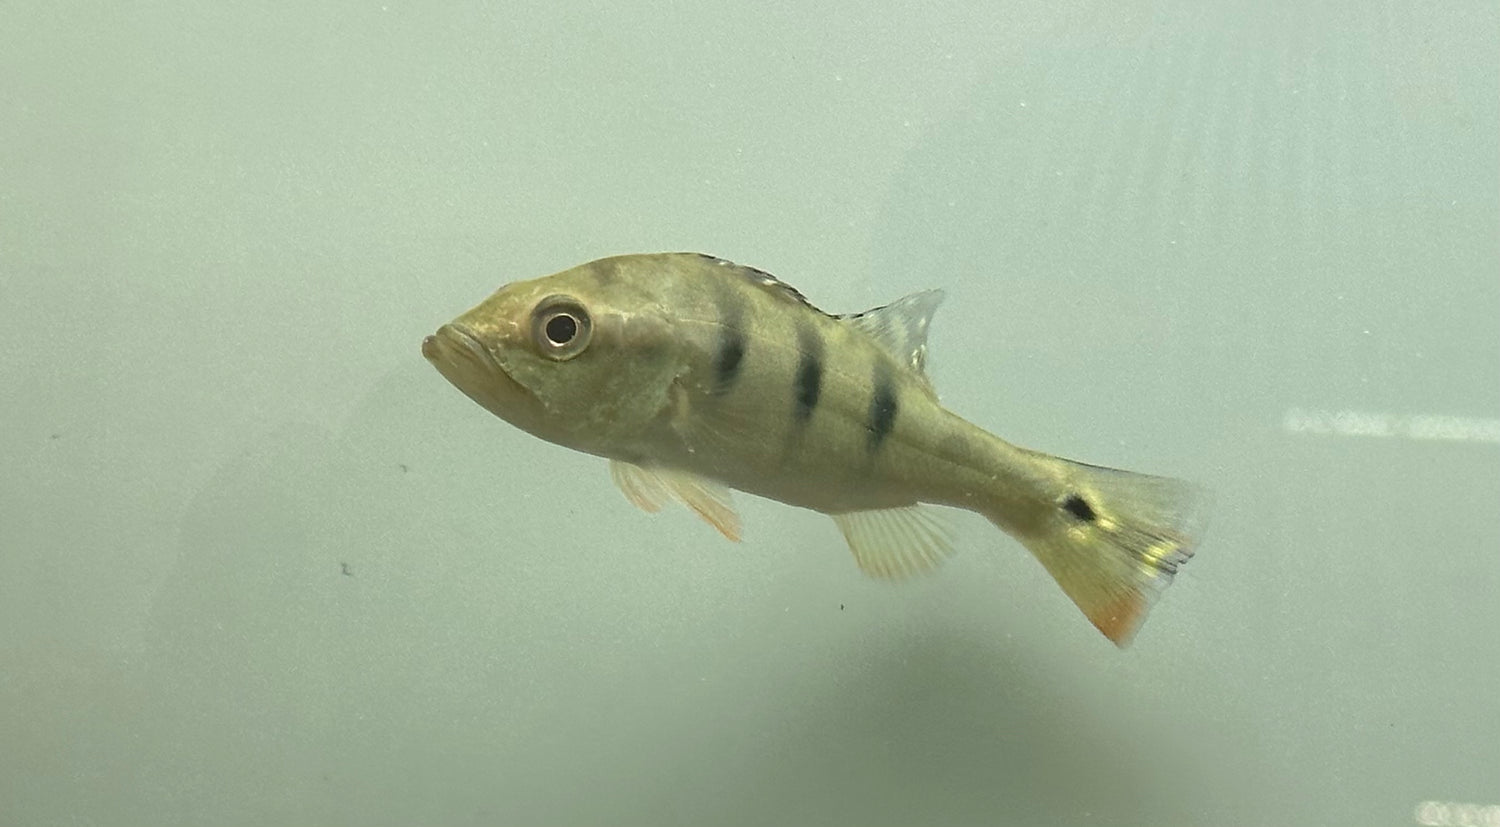 Ocellaris Peacock Bass (5-6”)